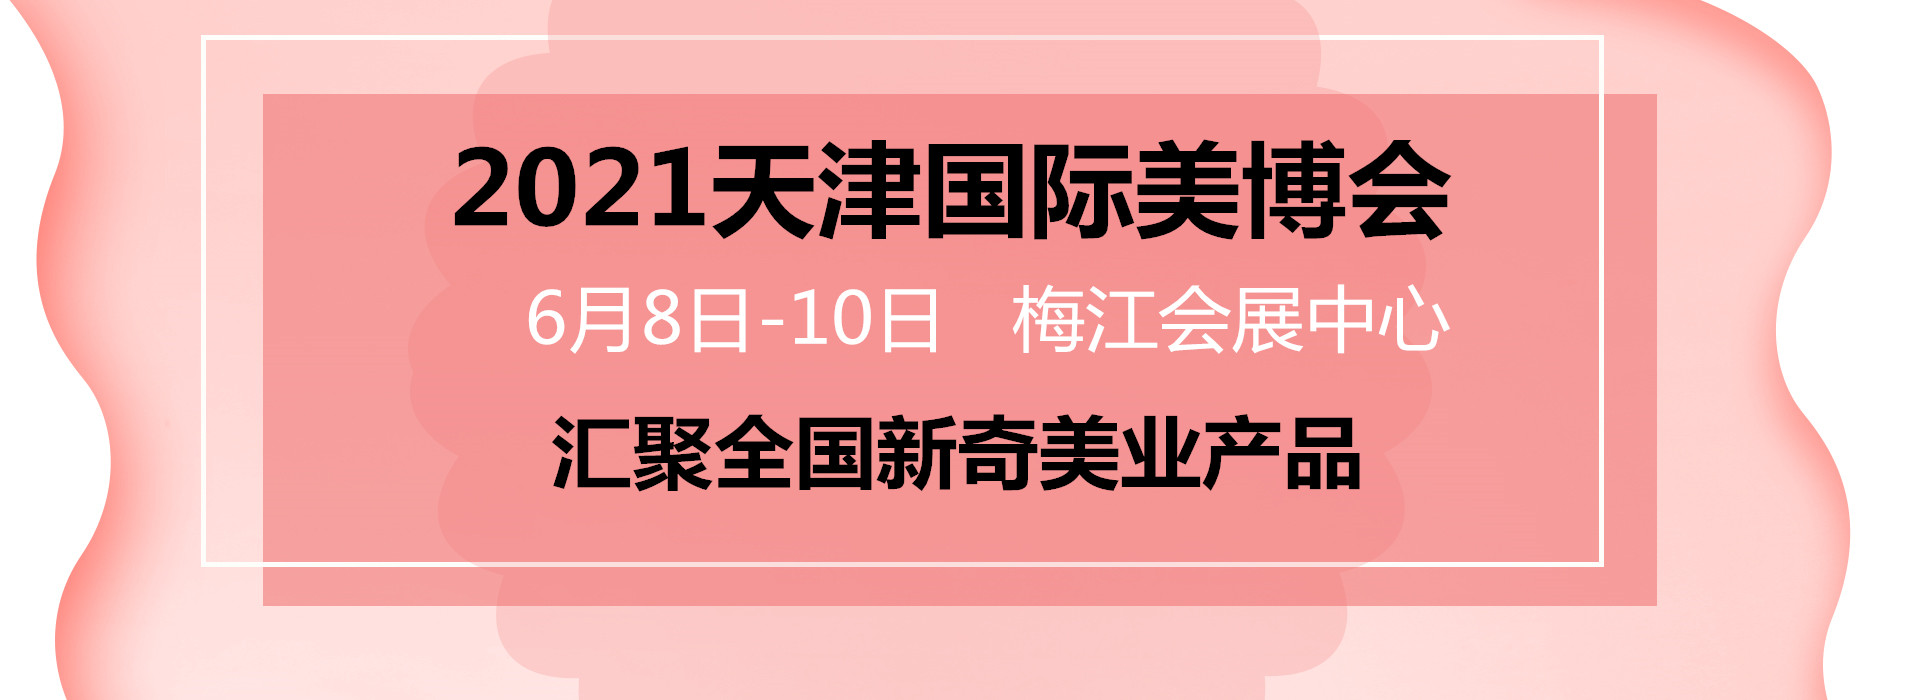 广州美博会-中国美博会-2021天津美博会